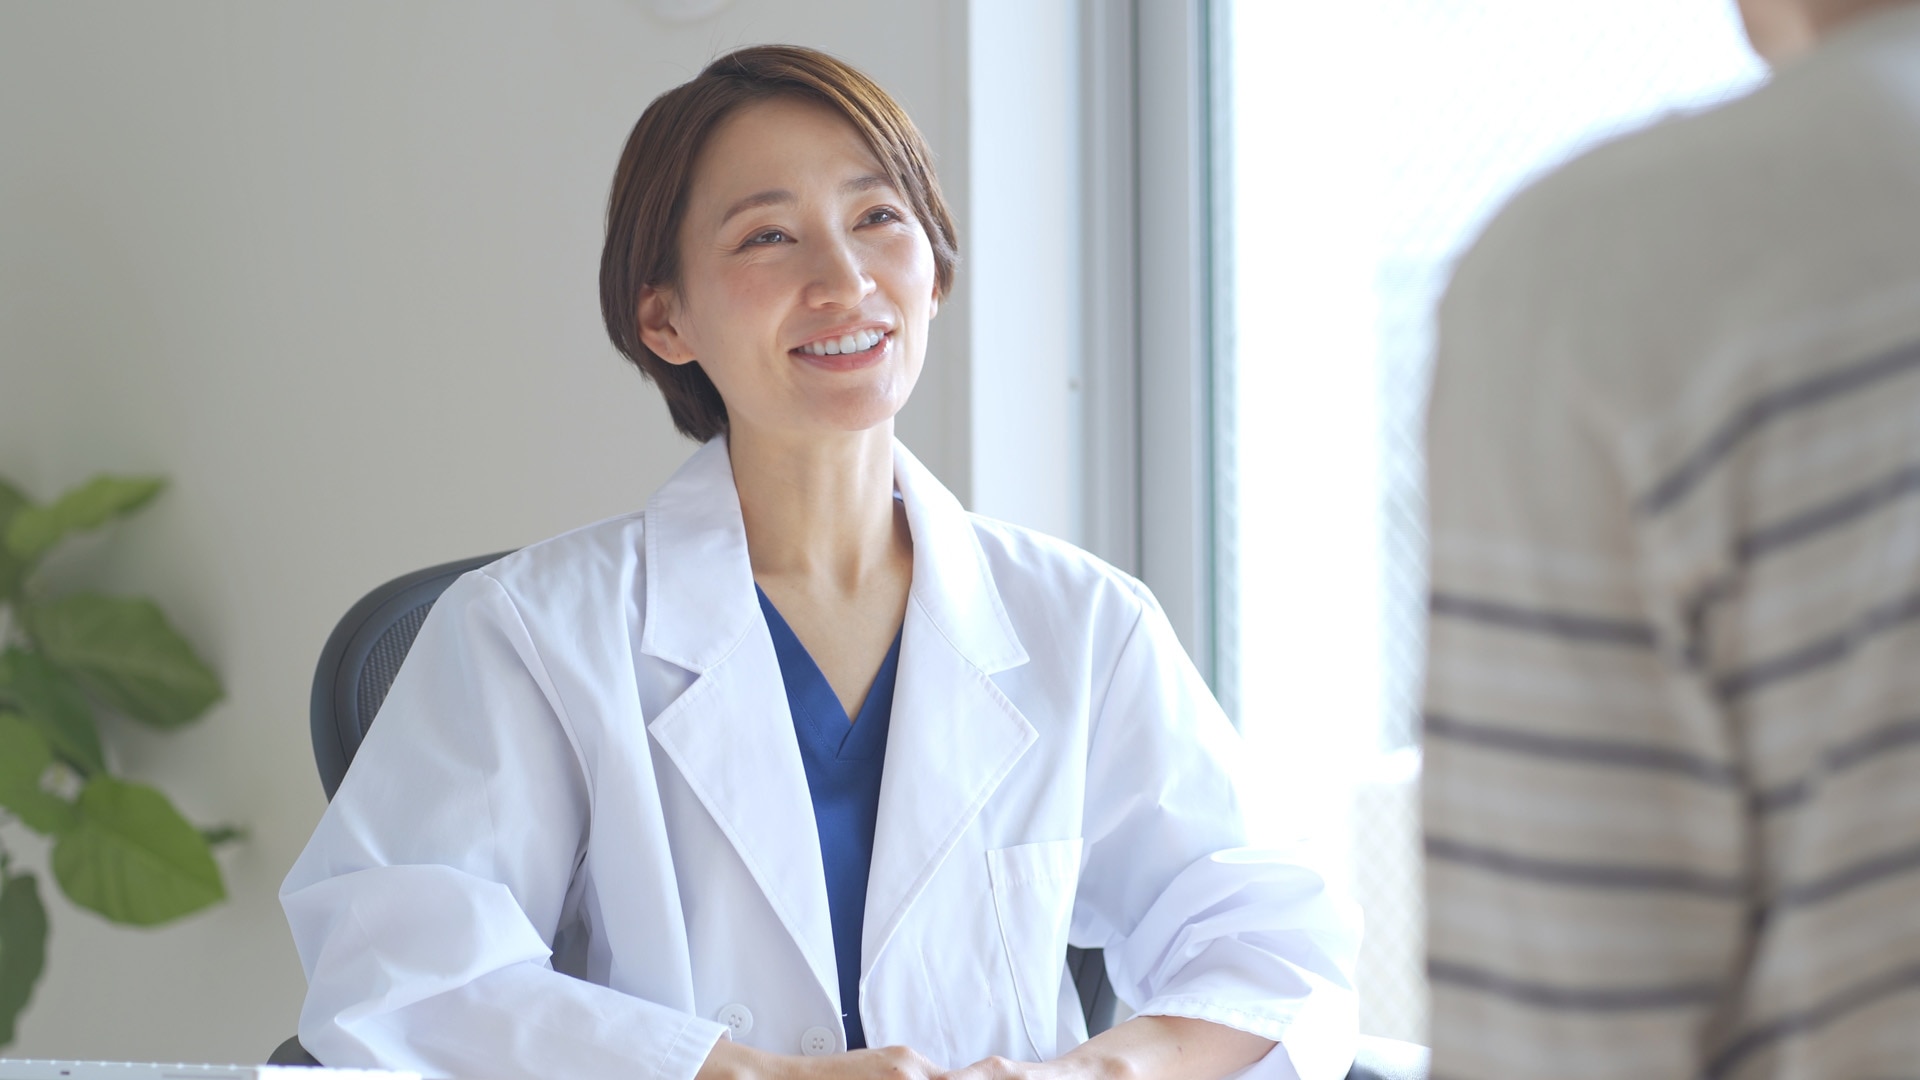 Nőnemű japán egészségügyi dolgozó beteget vizsgál.